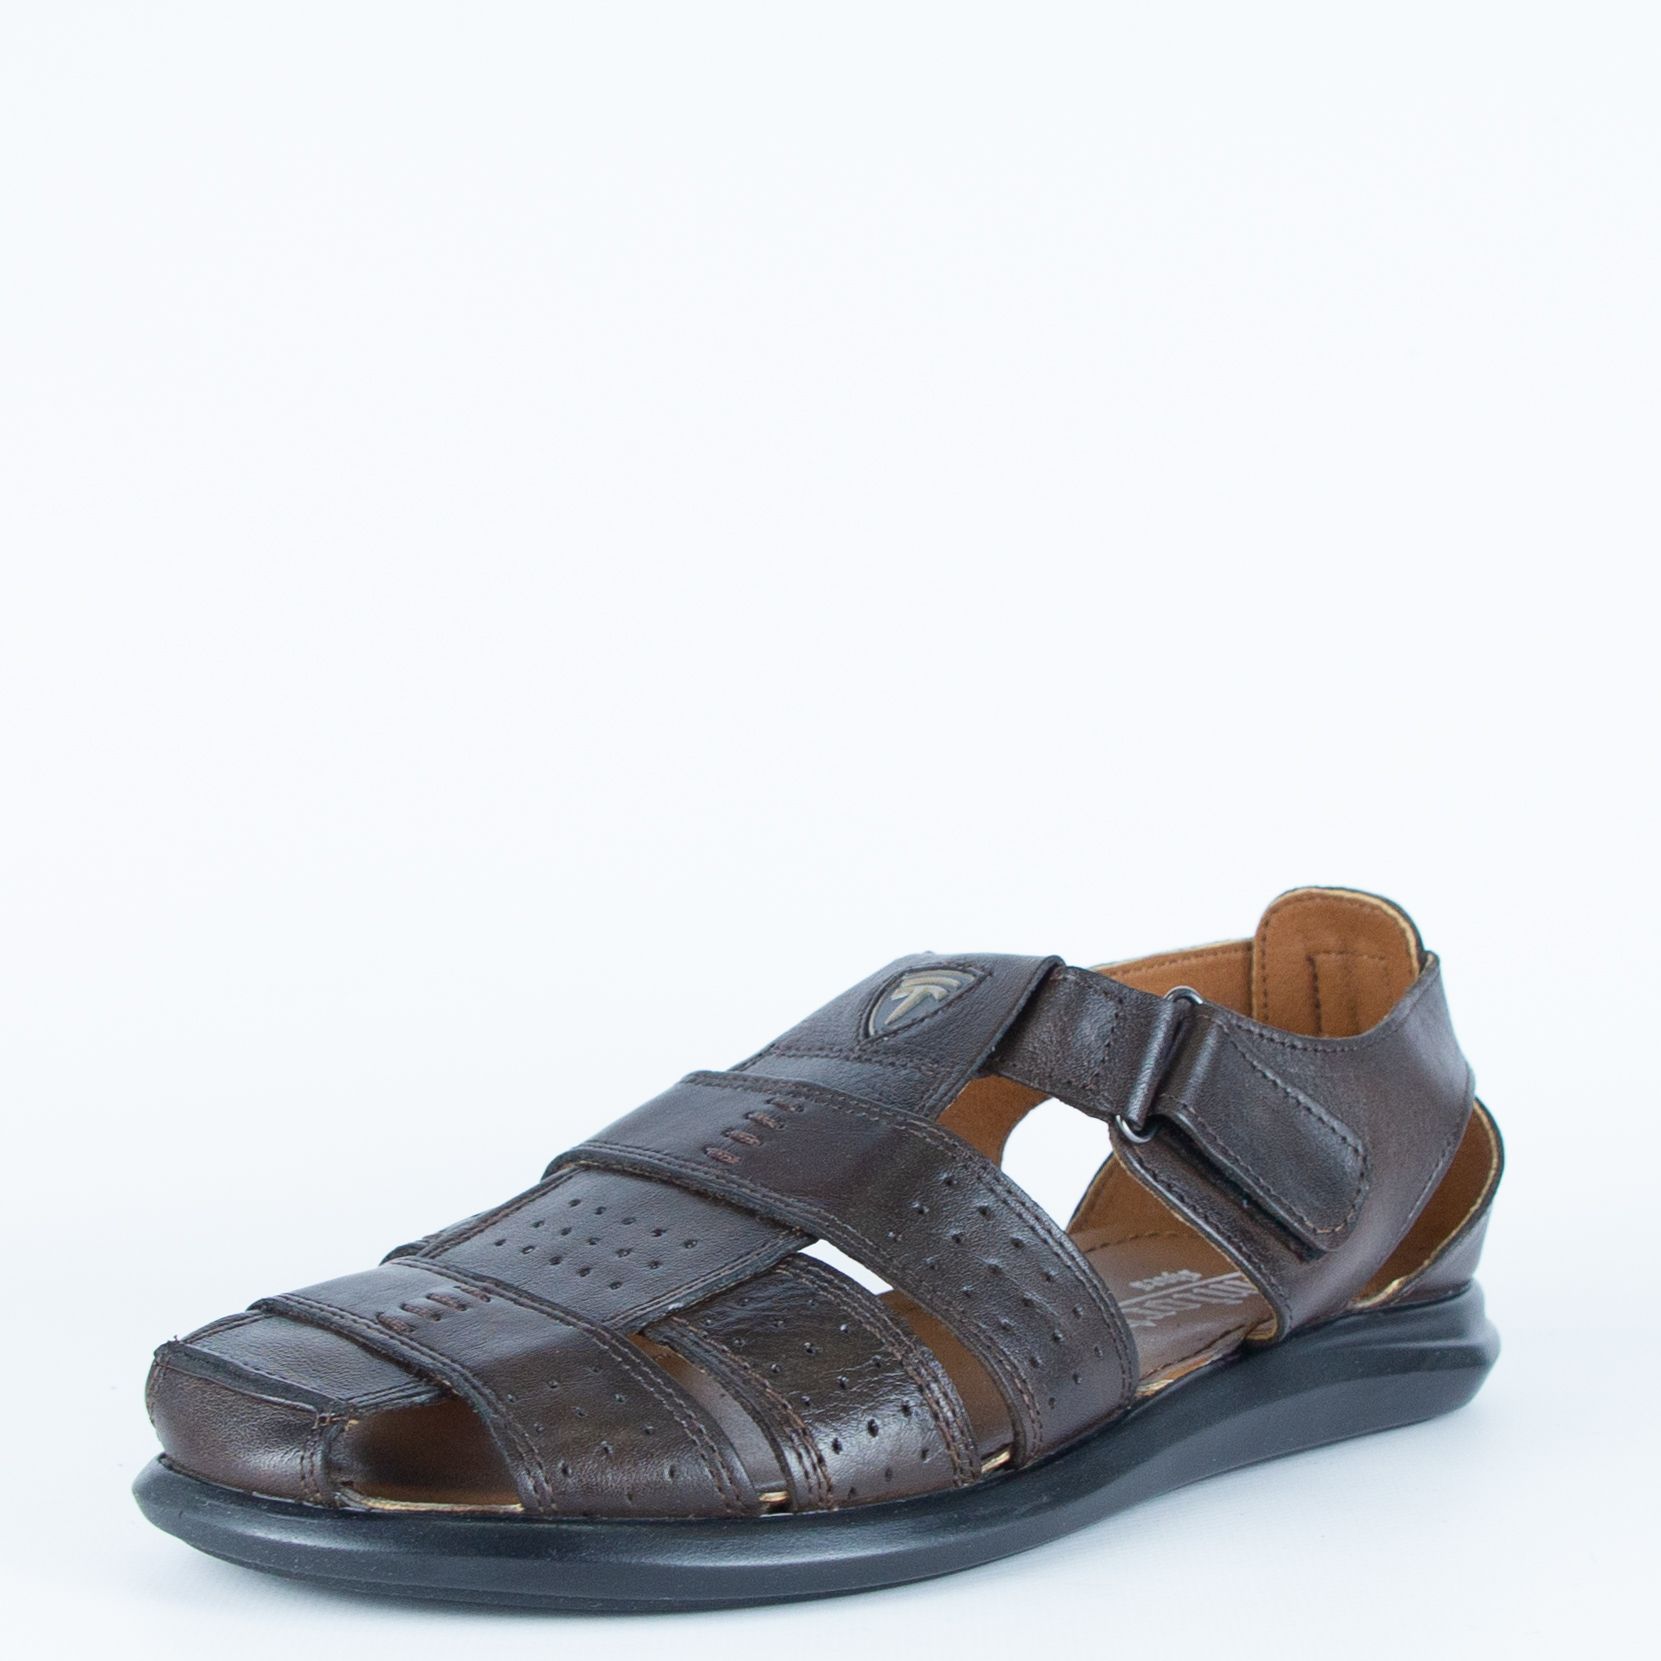 Сандалии мужские Comfort Shoes Непал коричневые 40 RU